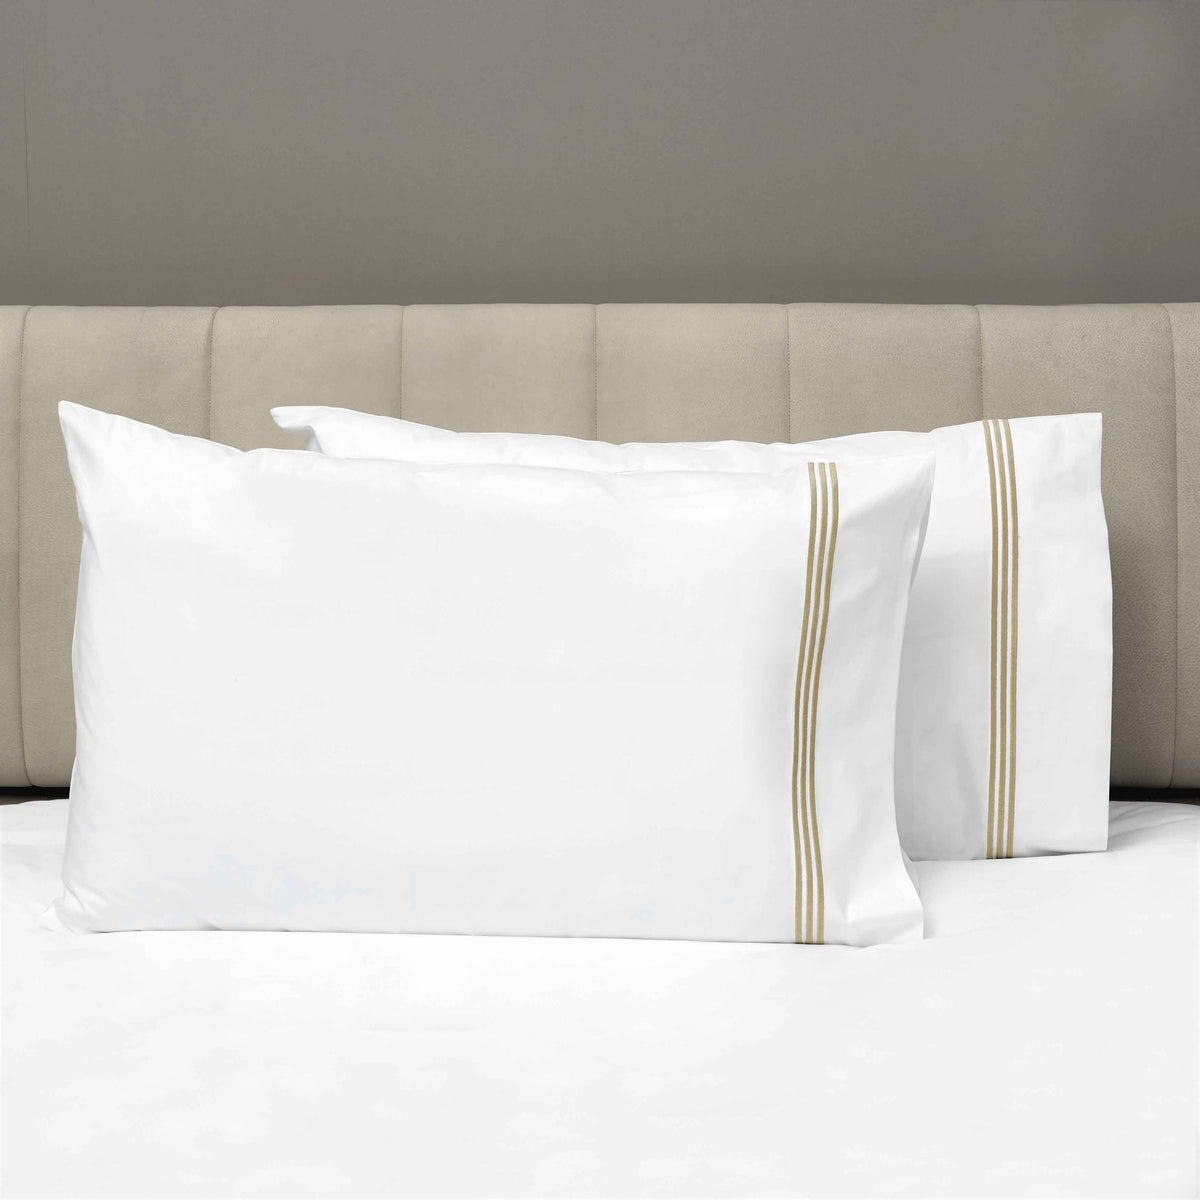 Pair of Pillowcases of Signoria Platinum Percale Bedding in White/Taupe Color